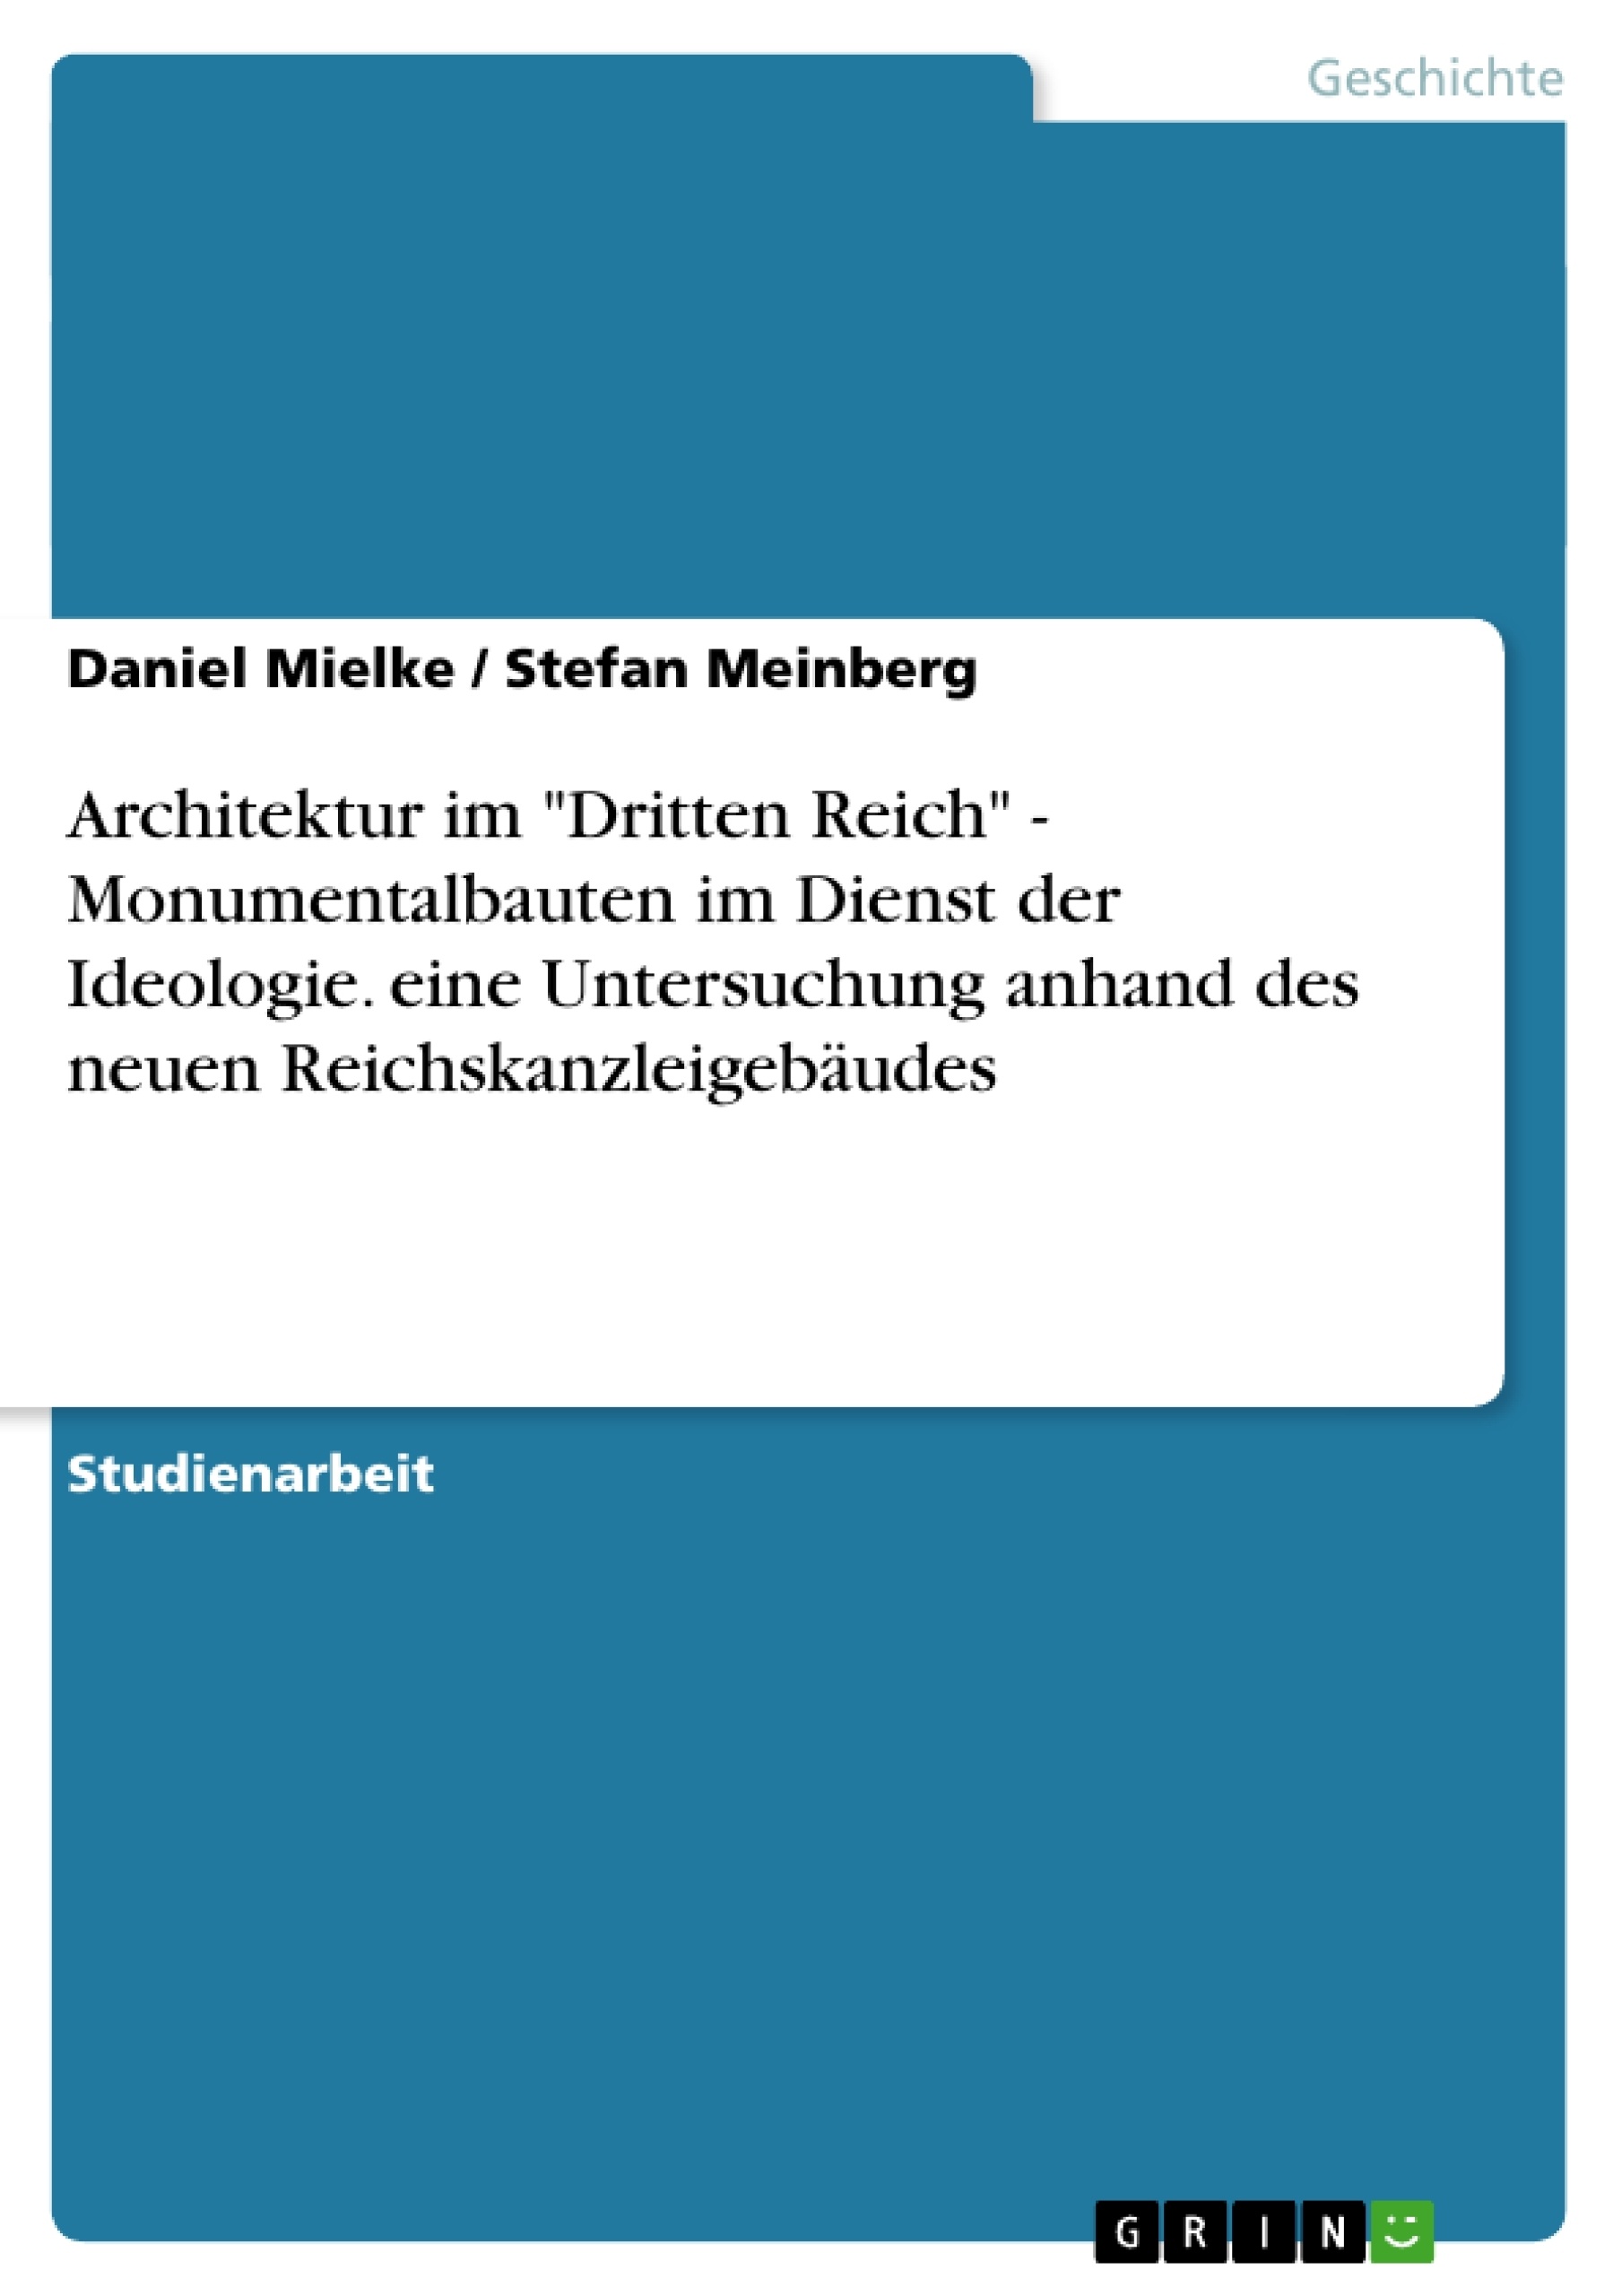 Título: Architektur im "Dritten Reich" - Monumentalbauten im Dienst der Ideologie. eine Untersuchung anhand des neuen Reichskanzleigebäudes